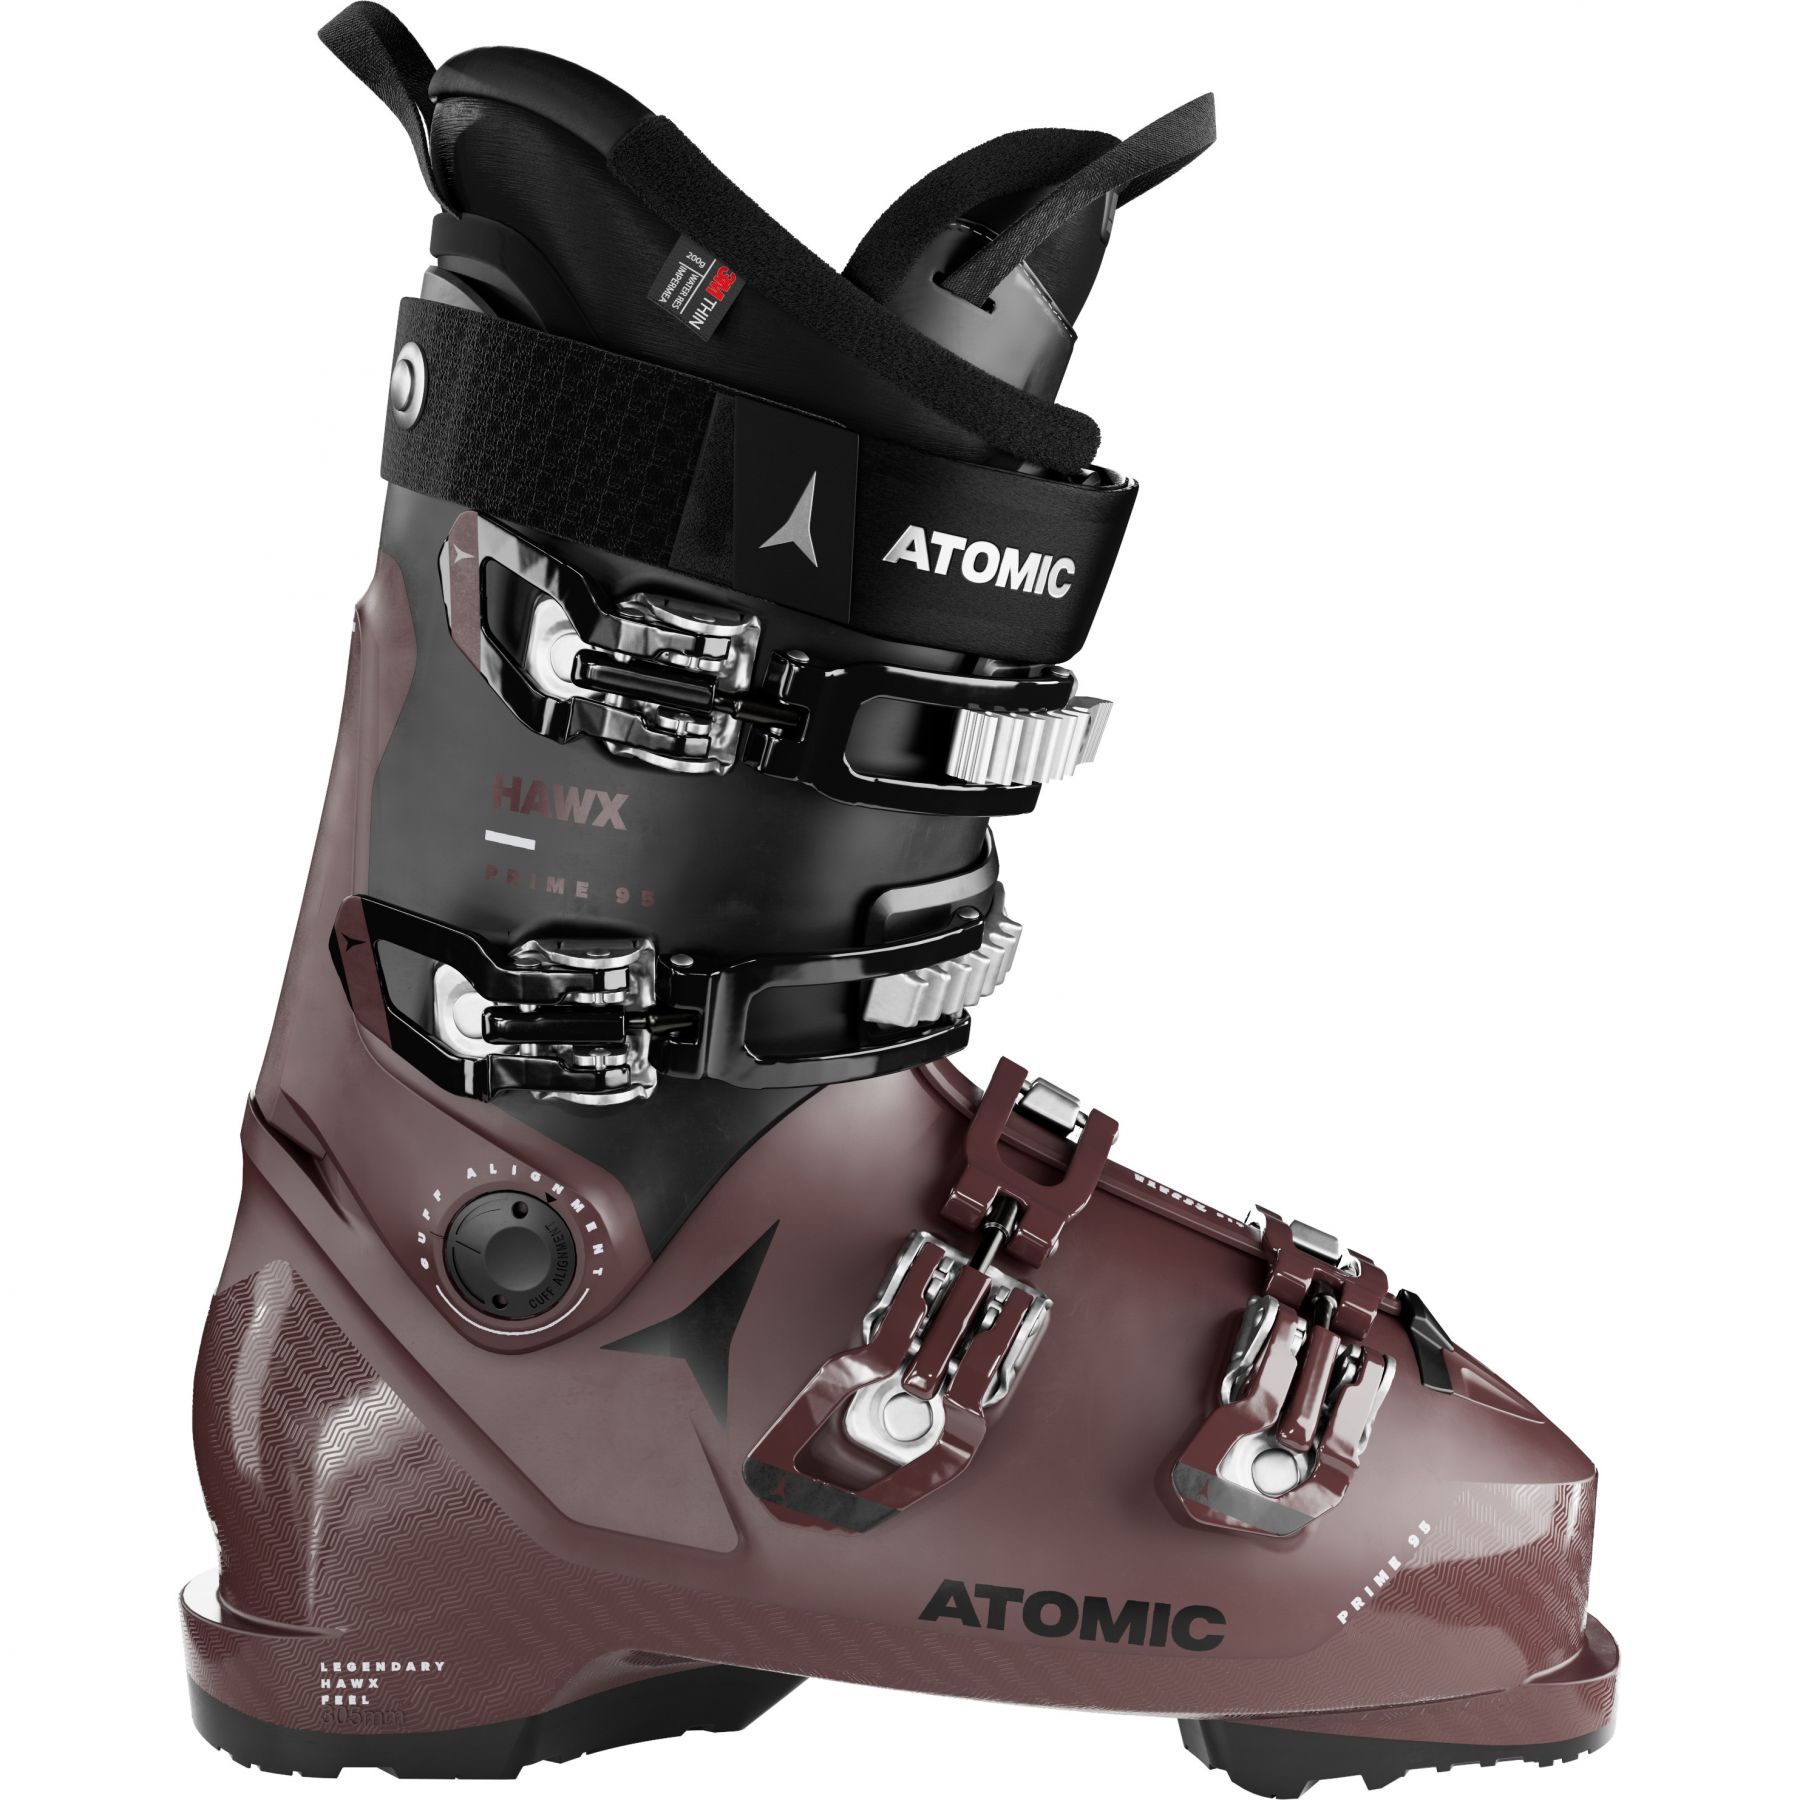 Billede af Atomic Hawx Prime 95 W GW, skistøvler, dame, brun/sort hos Skisport.dk